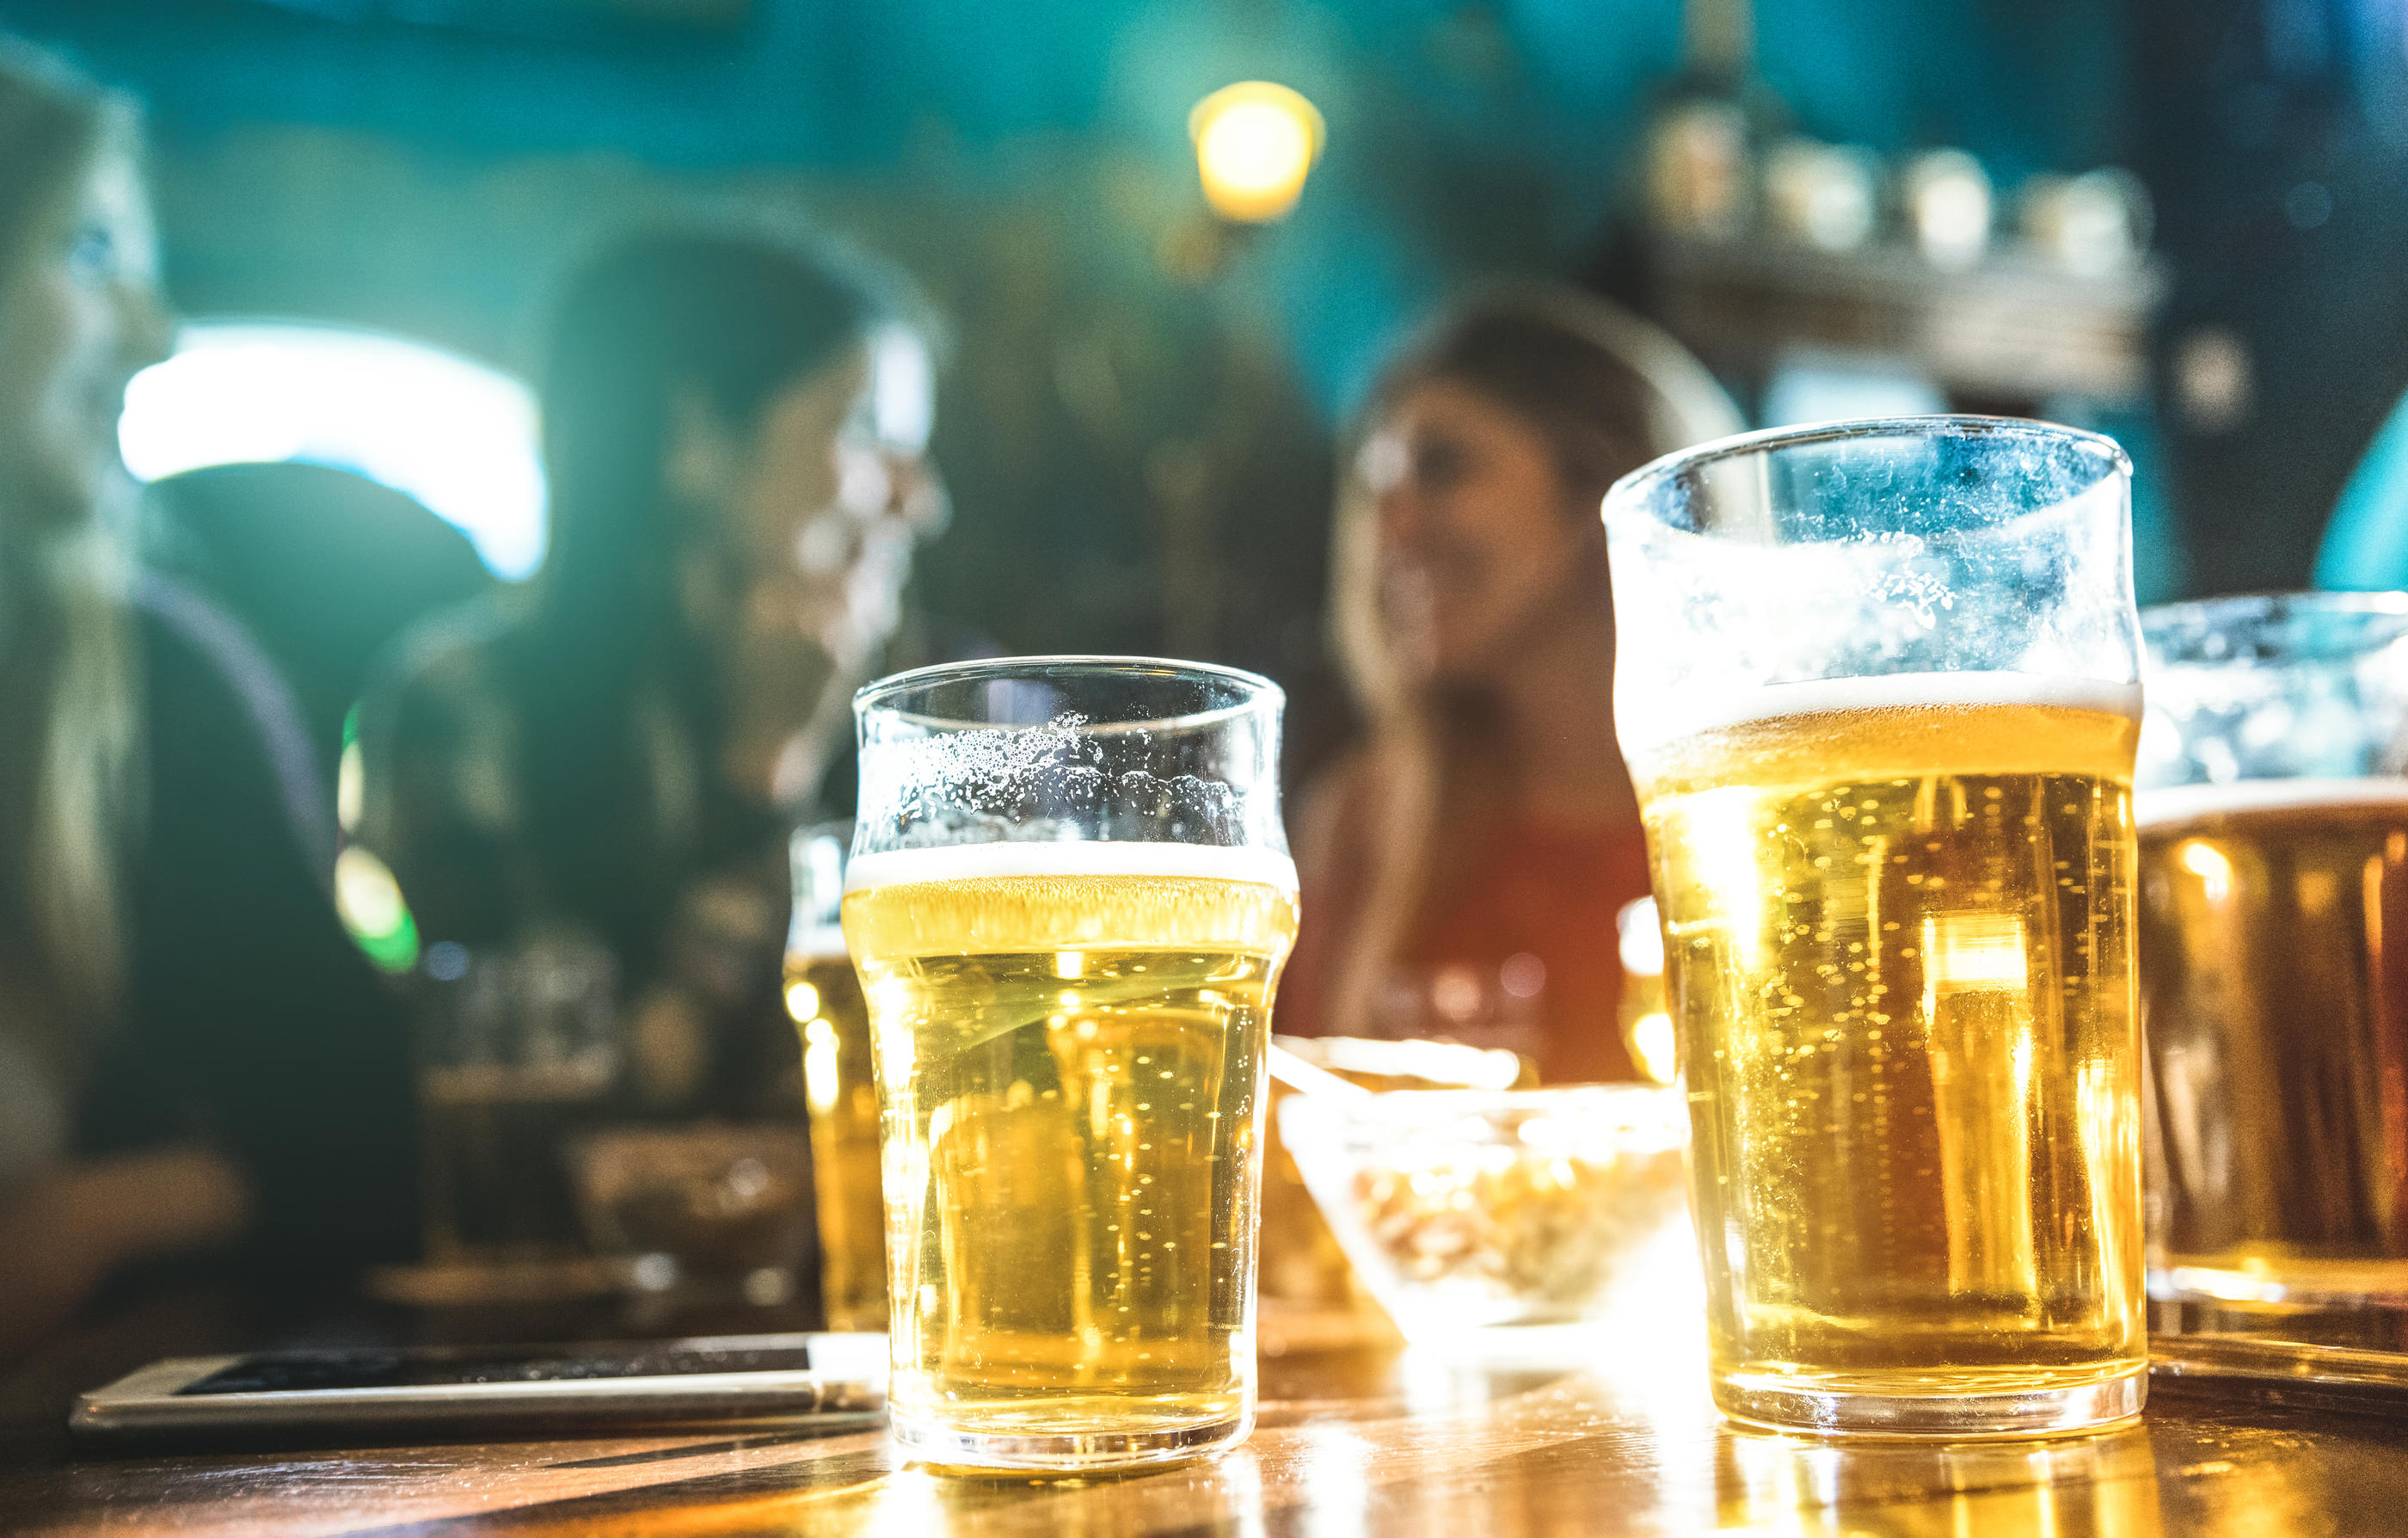 La consommation d'alcool baisse depuis trois décennies mais reste très élevée, selon Santé publique France, dans un rapport publié mardi. (Illustration) iStock.